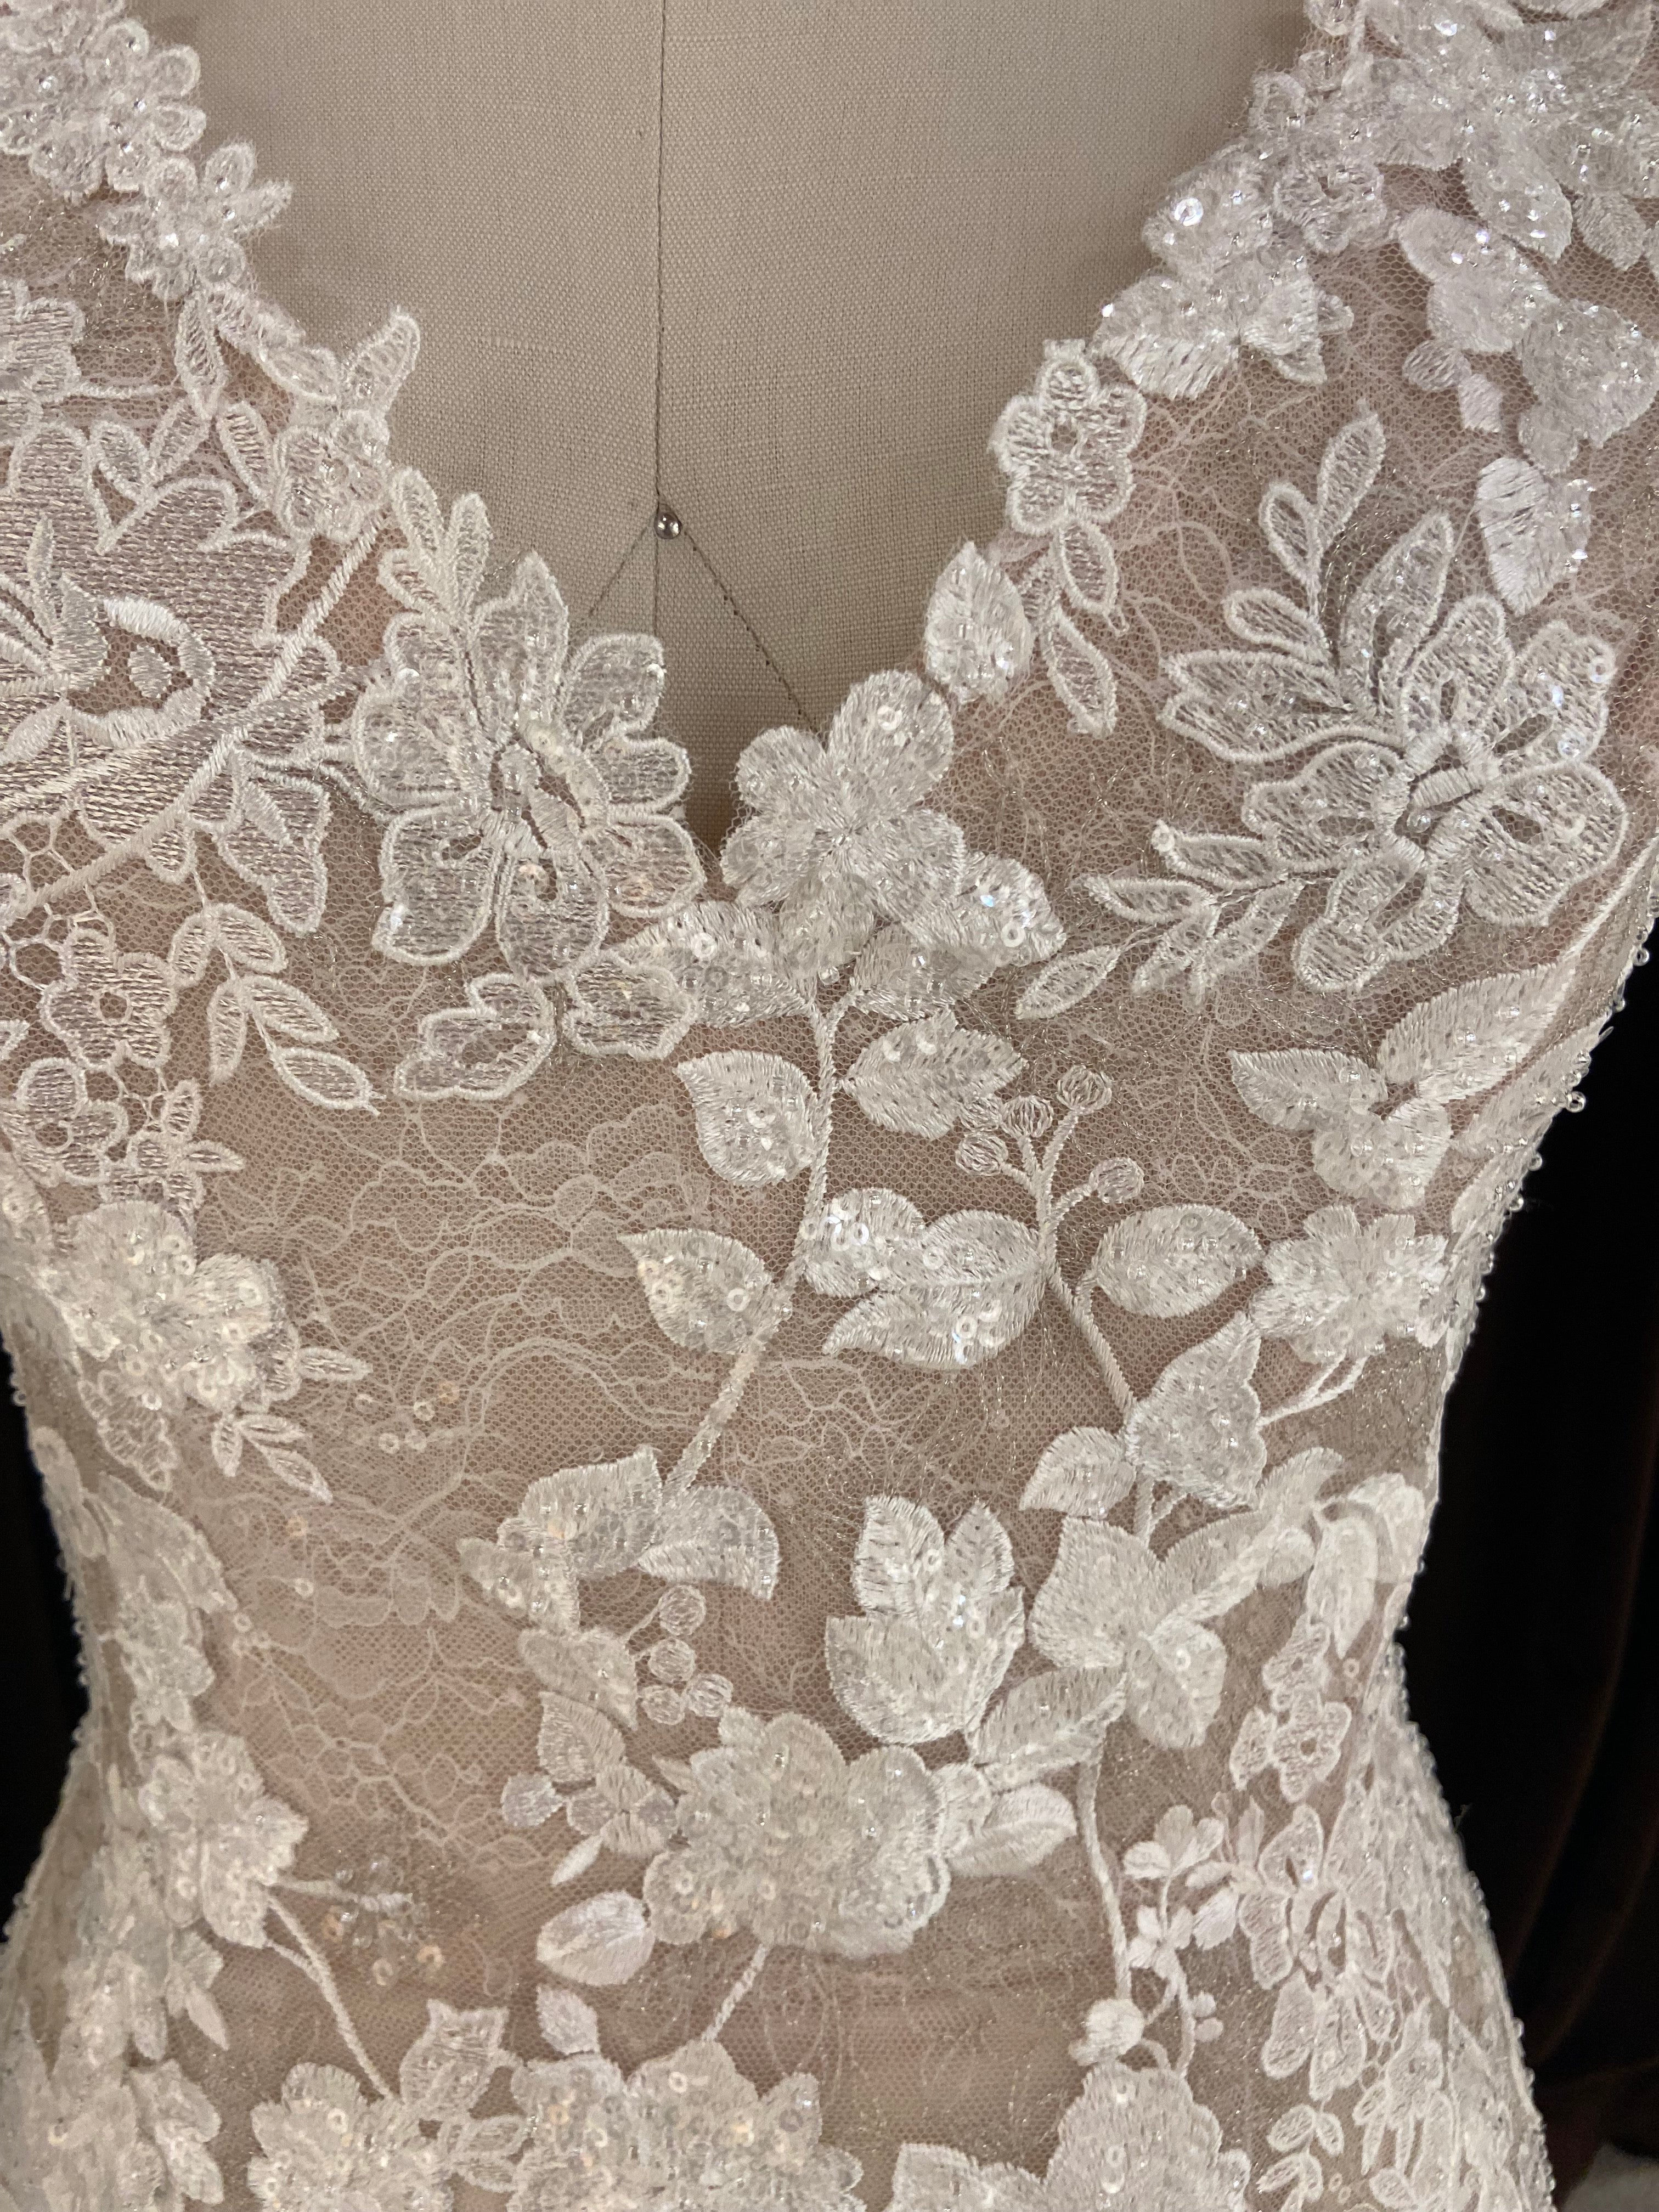 GC#33637 - Caroline Castigliano Dazzle Wedding Dress in Size 13